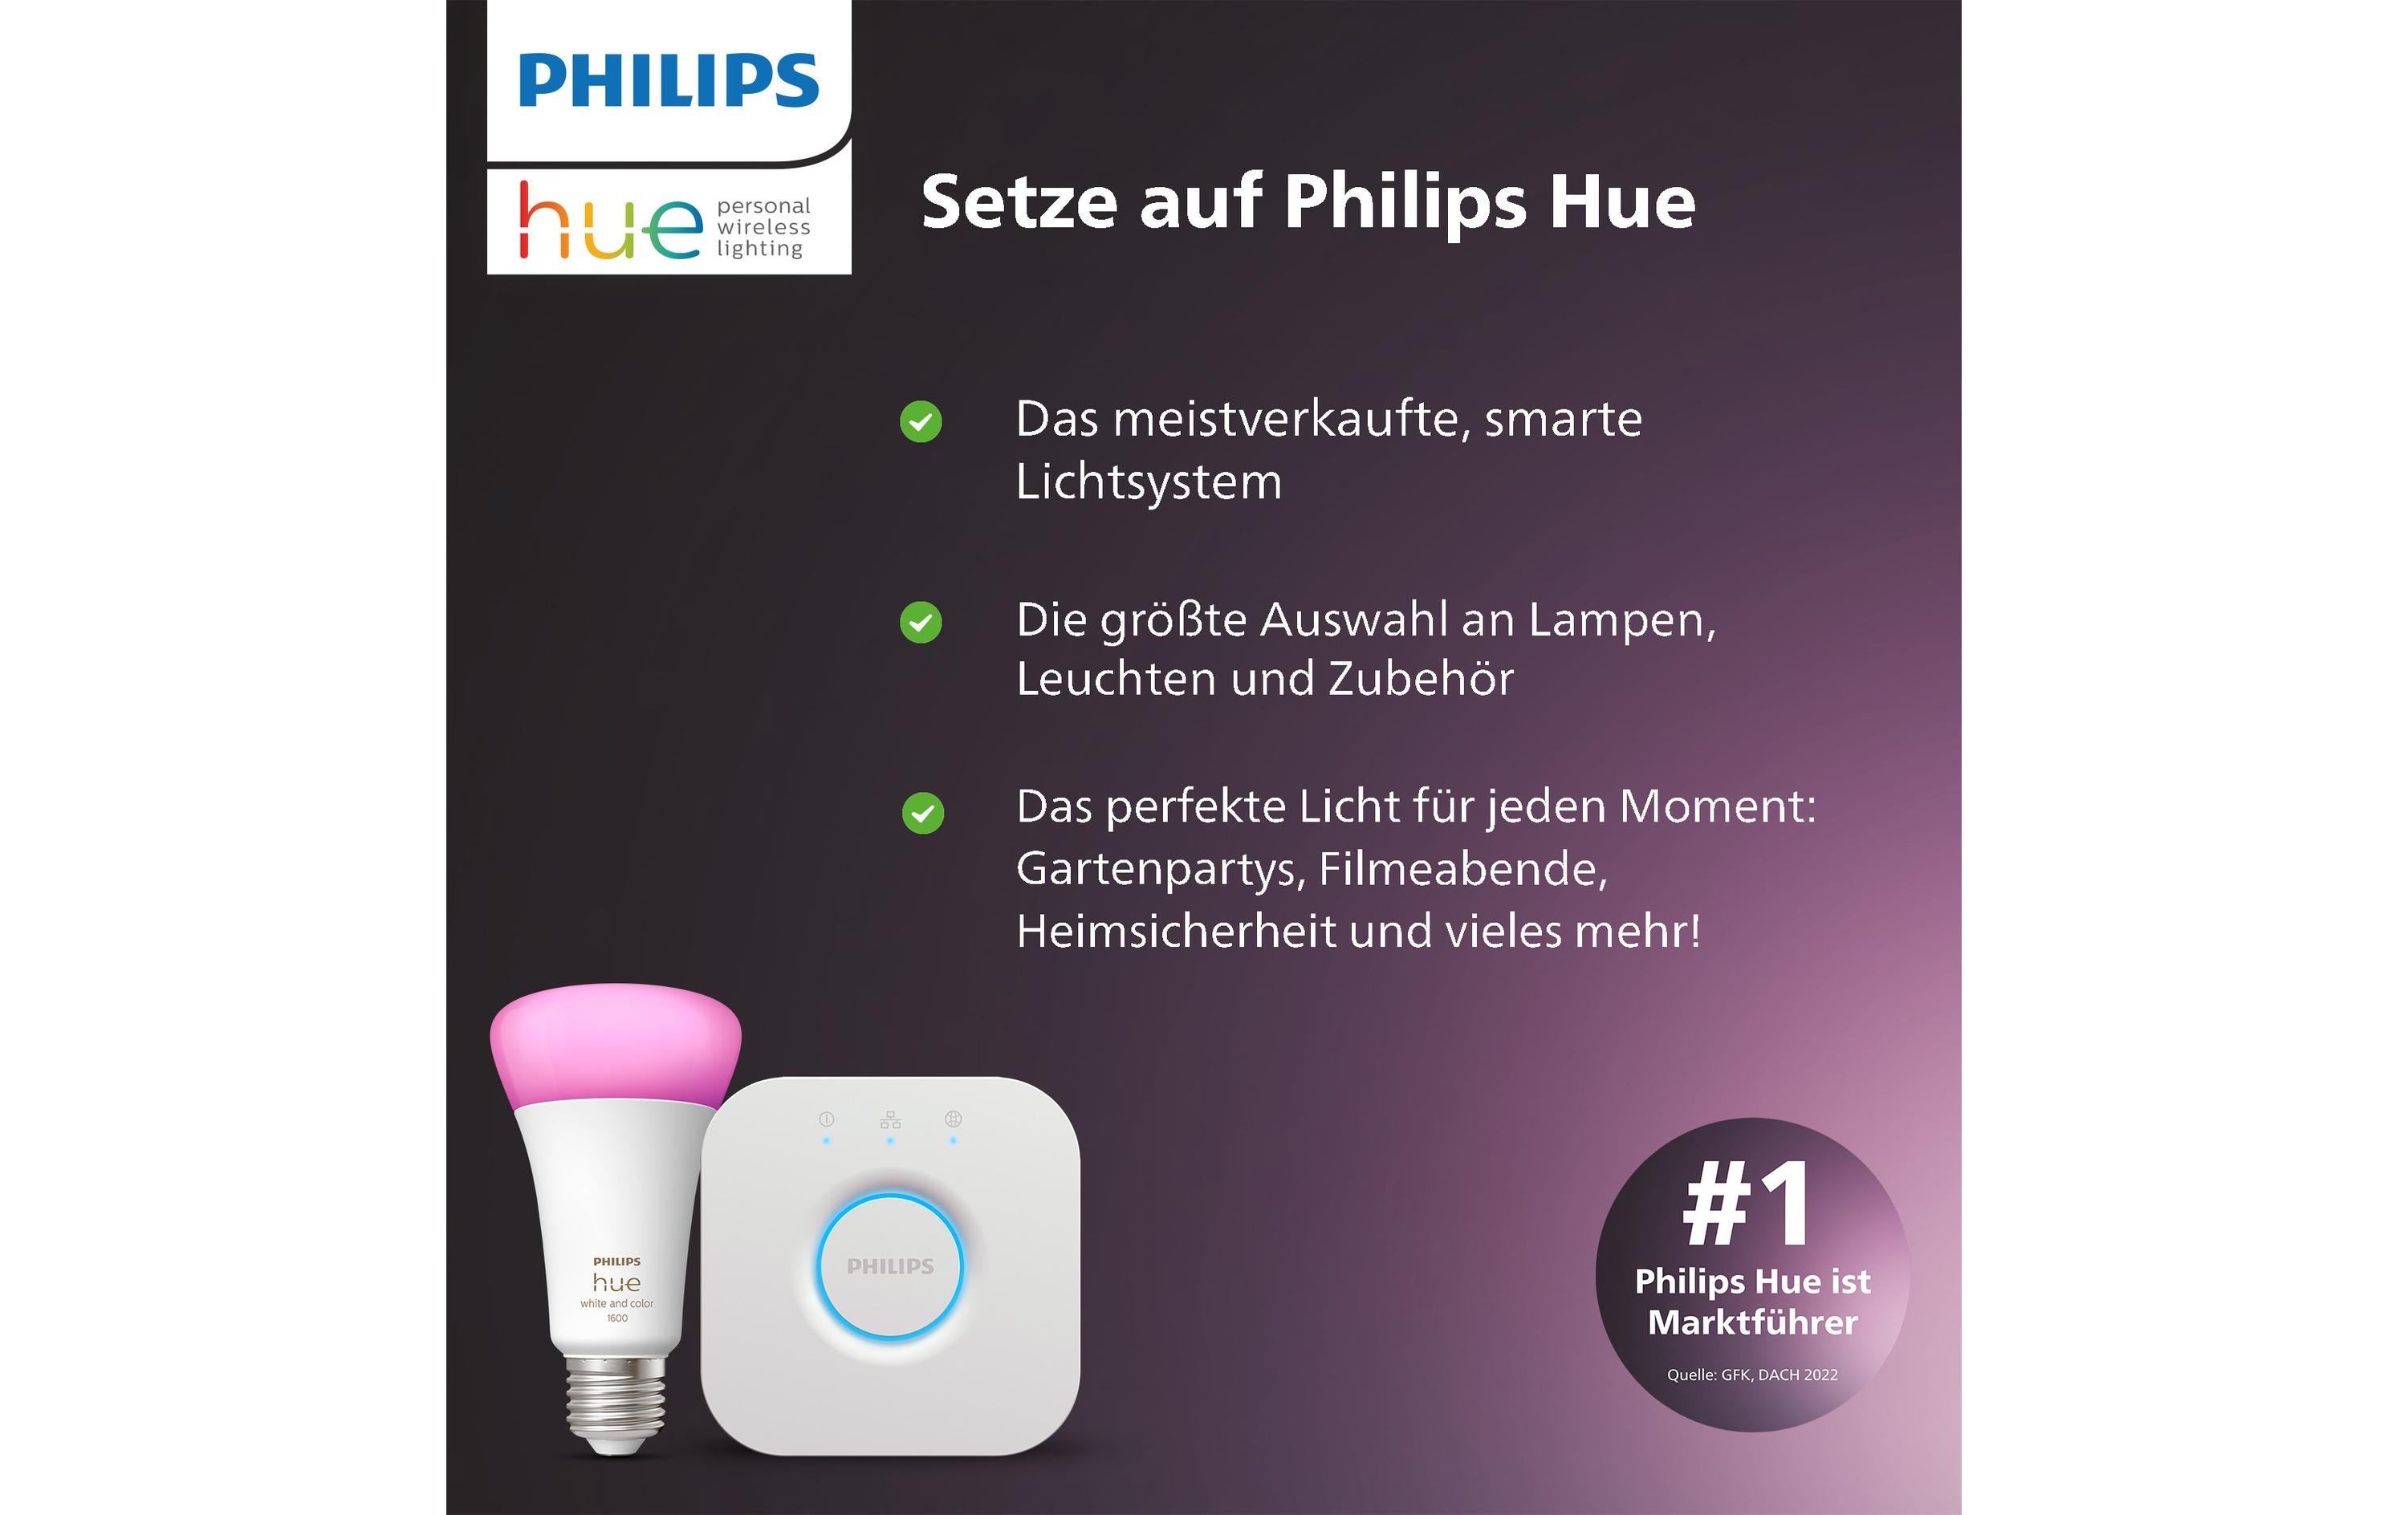 Philips Hue Secure Anti-Diebstahl Kabel